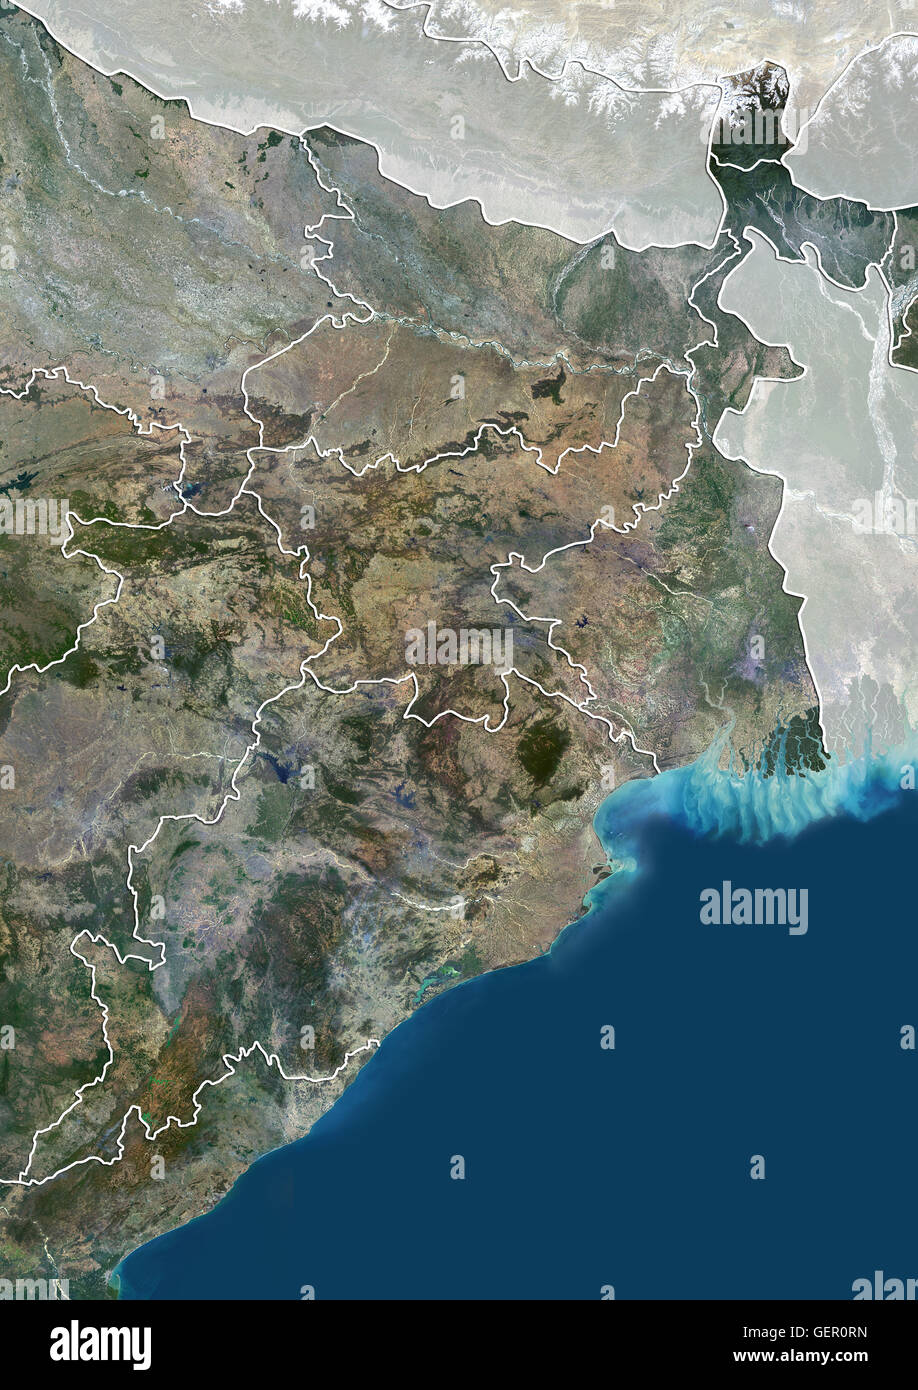 Vista satellitare di East India (con confini tra paesi e maschera). Esso copre il stati indiani del Bihar, nello stato del Jharkhand, Odisha e Bengala Occidentale. Questa immagine è stata elaborata sulla base dei dati acquisiti dal satellite Landsat 8 satellite in 2014. Foto Stock